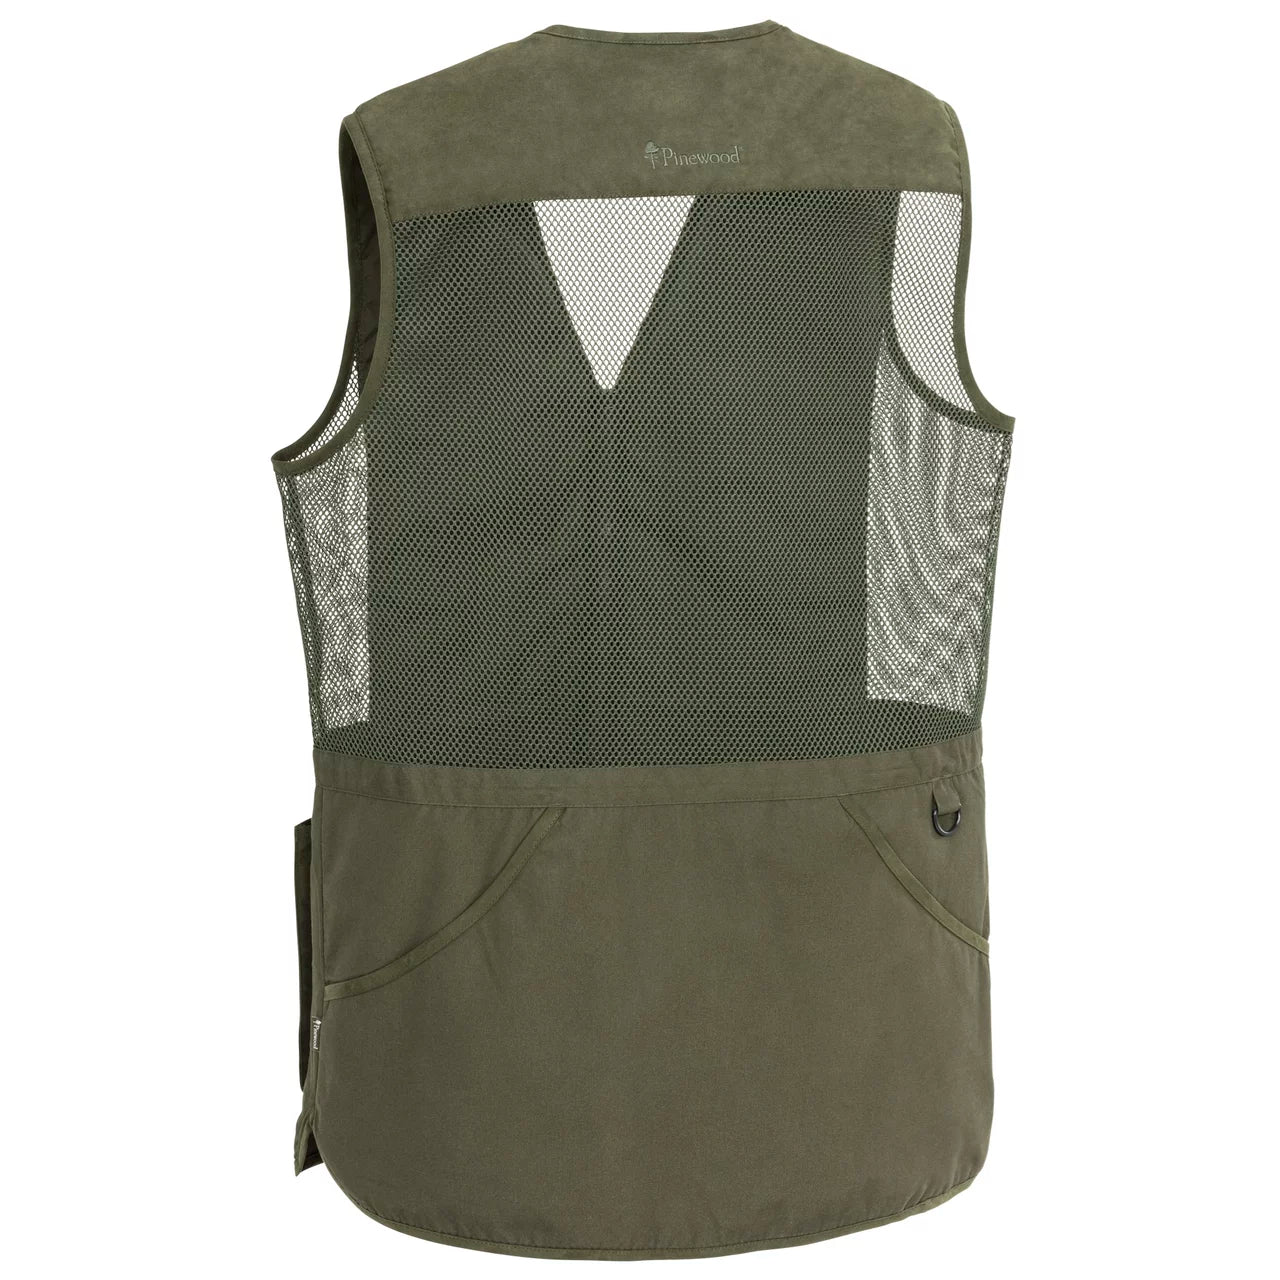 Cadley M'S 5805 Shooting Vest